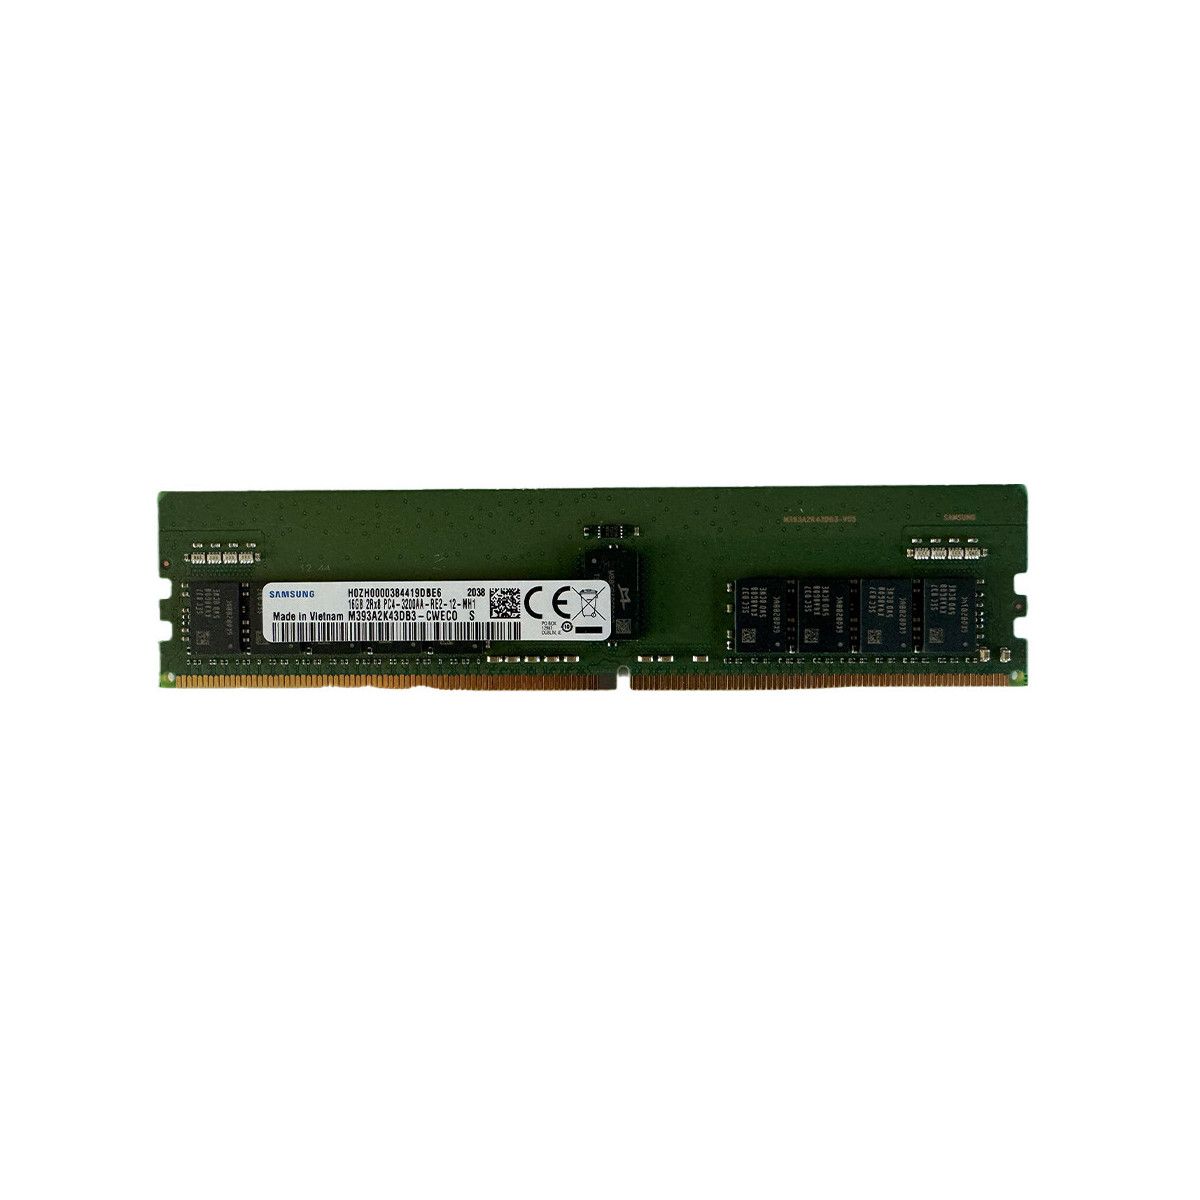 AA810826-MS - Memstar 1x 16GB DDR4-3200 RDIMM PC4-25600R - Memorie OEM compatibilă Mem-Star 1 - Memstar 